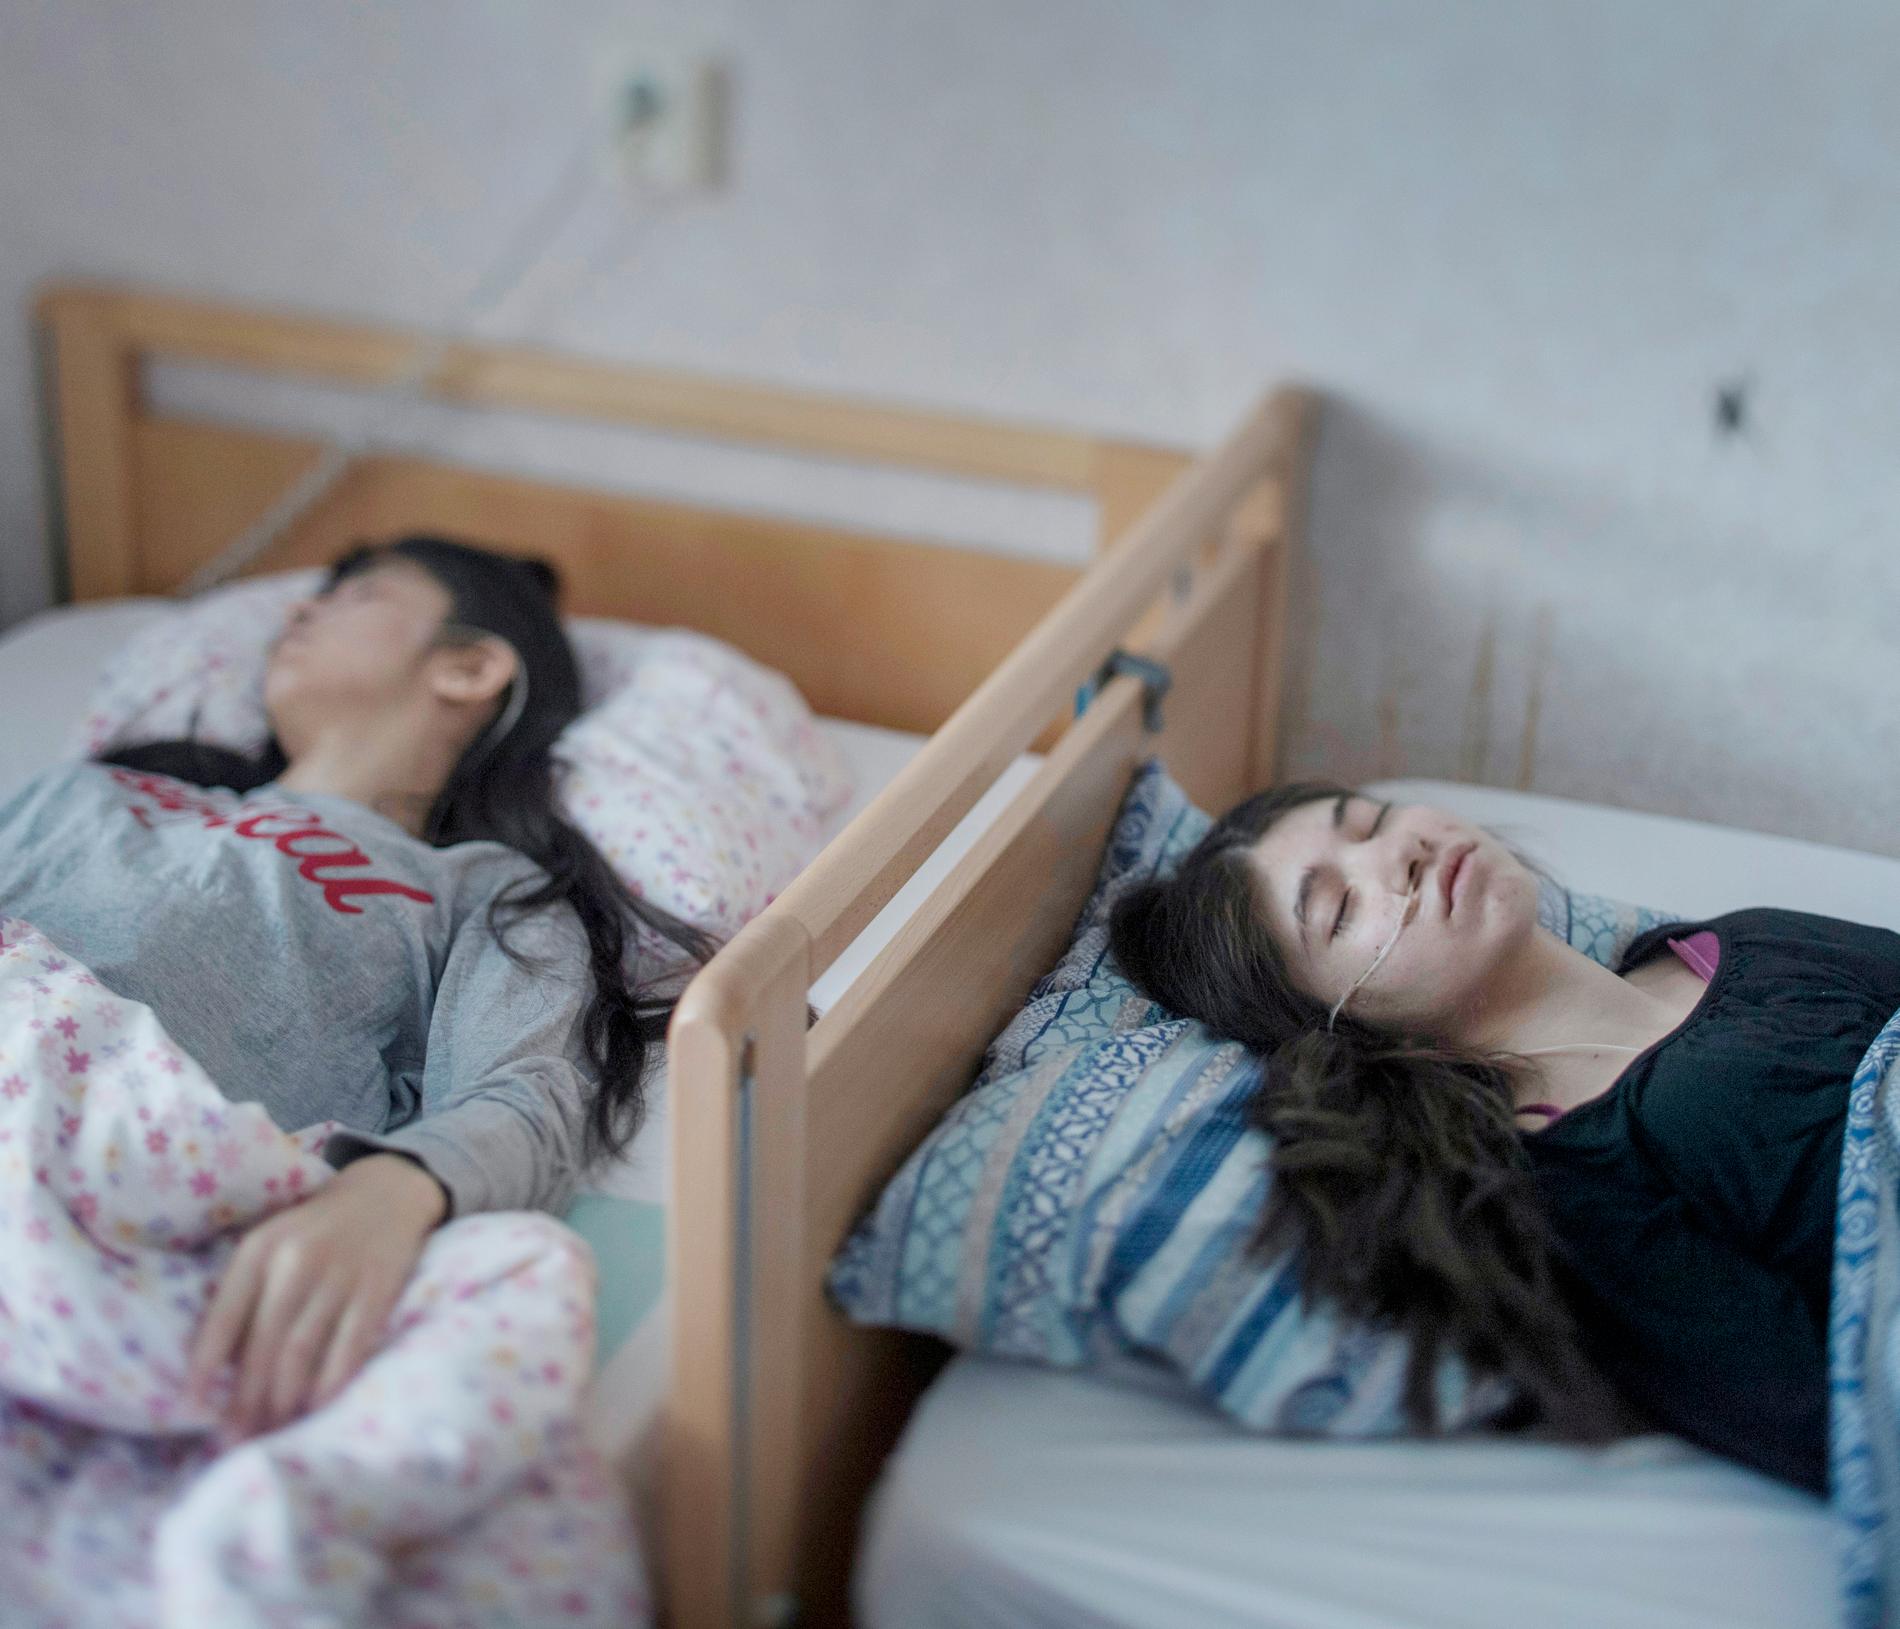 Systrarna Djeneta och Ibadeta i sina sängar i Horndal utanför Avesta. Bilden belönades med första pris i kategorin People i prestigefulla tävlingen World Press Photo. 